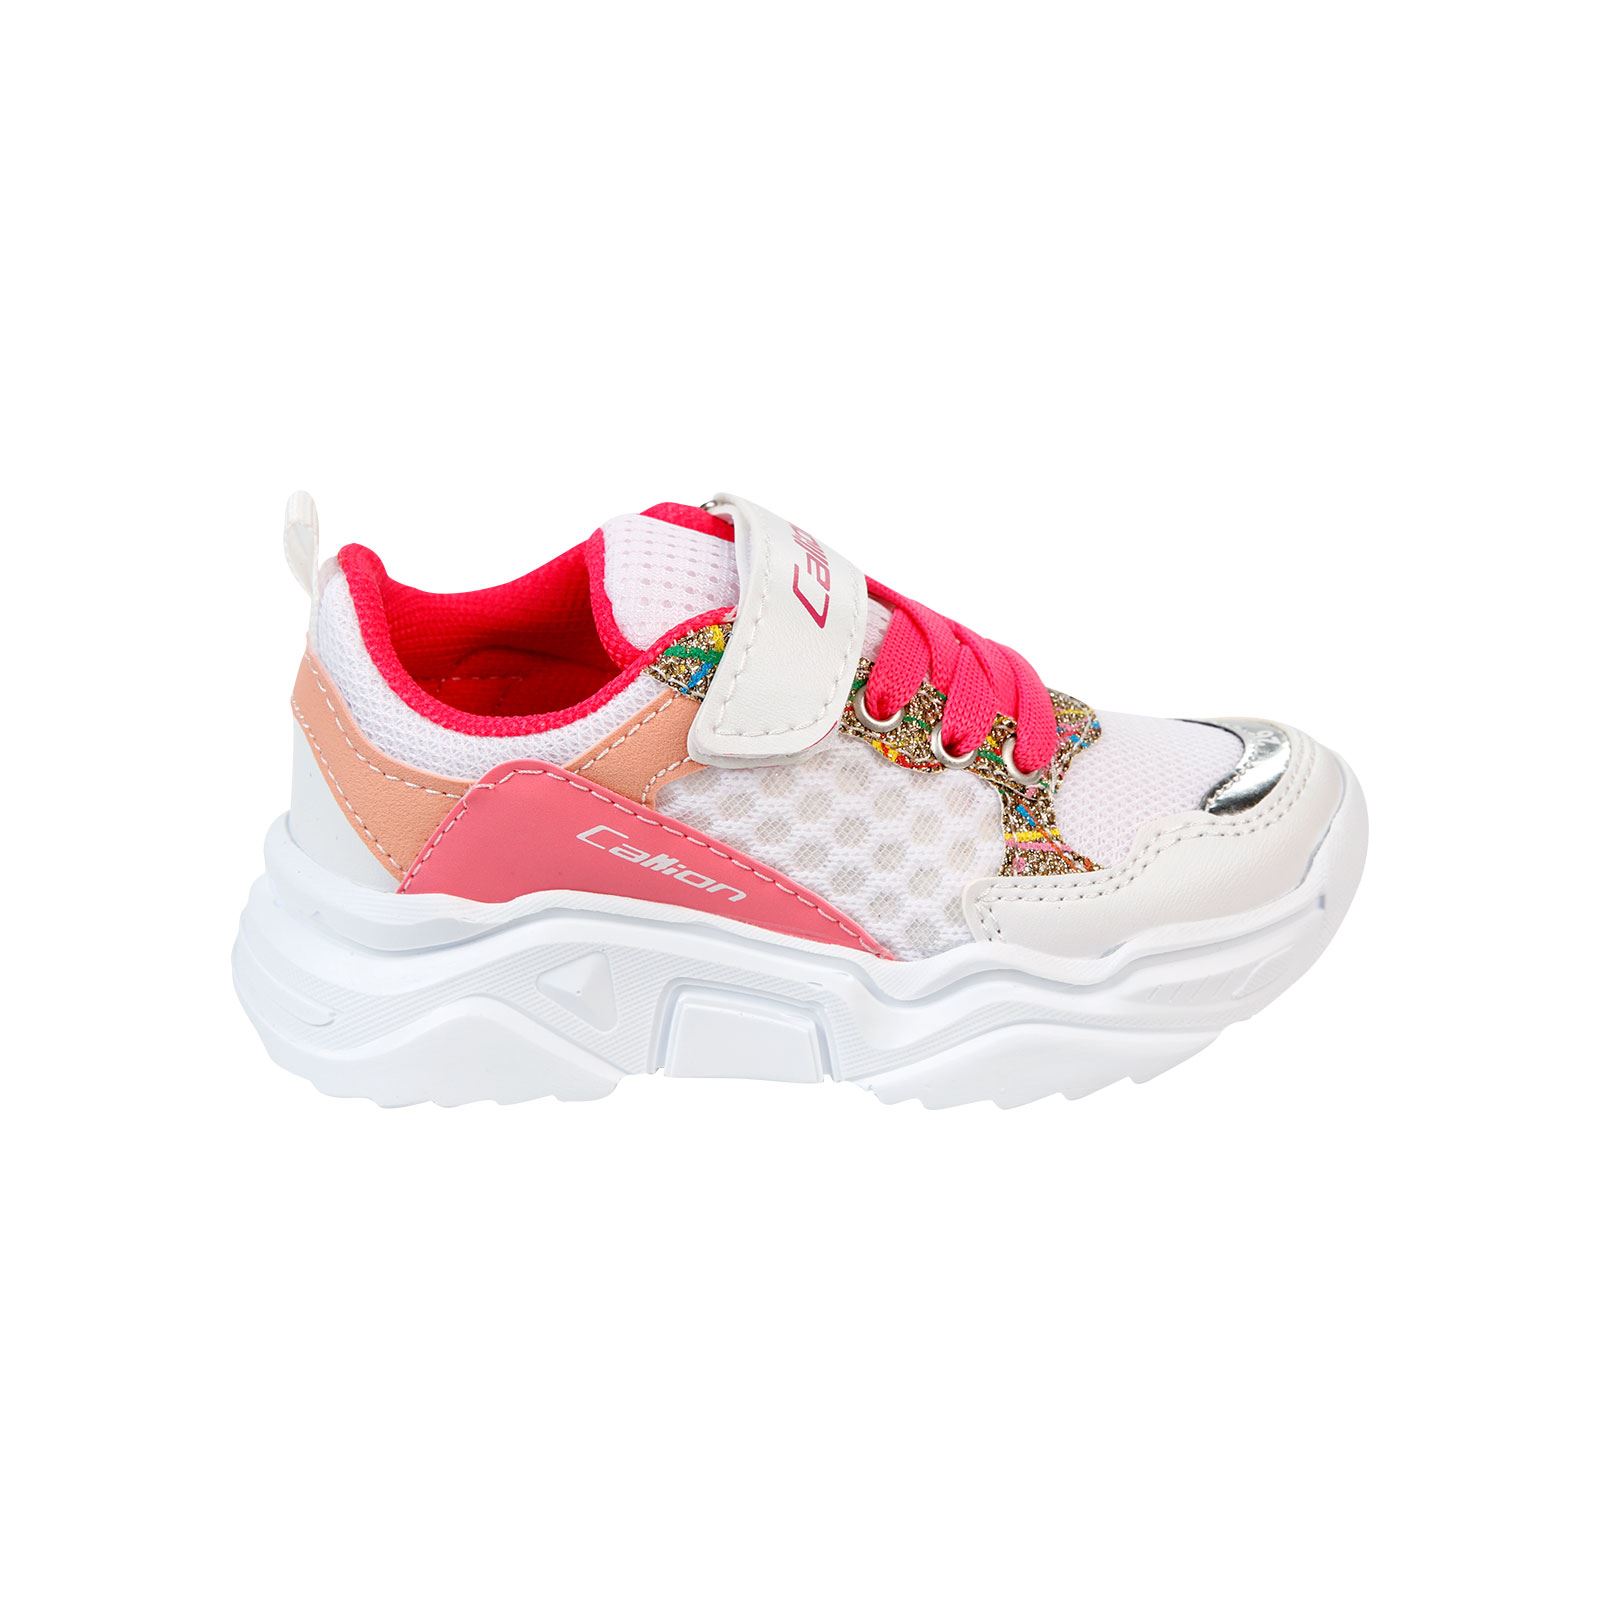 Callion Kız Çocuk Spor Ayakkabı 26-30 Numara Beyaz